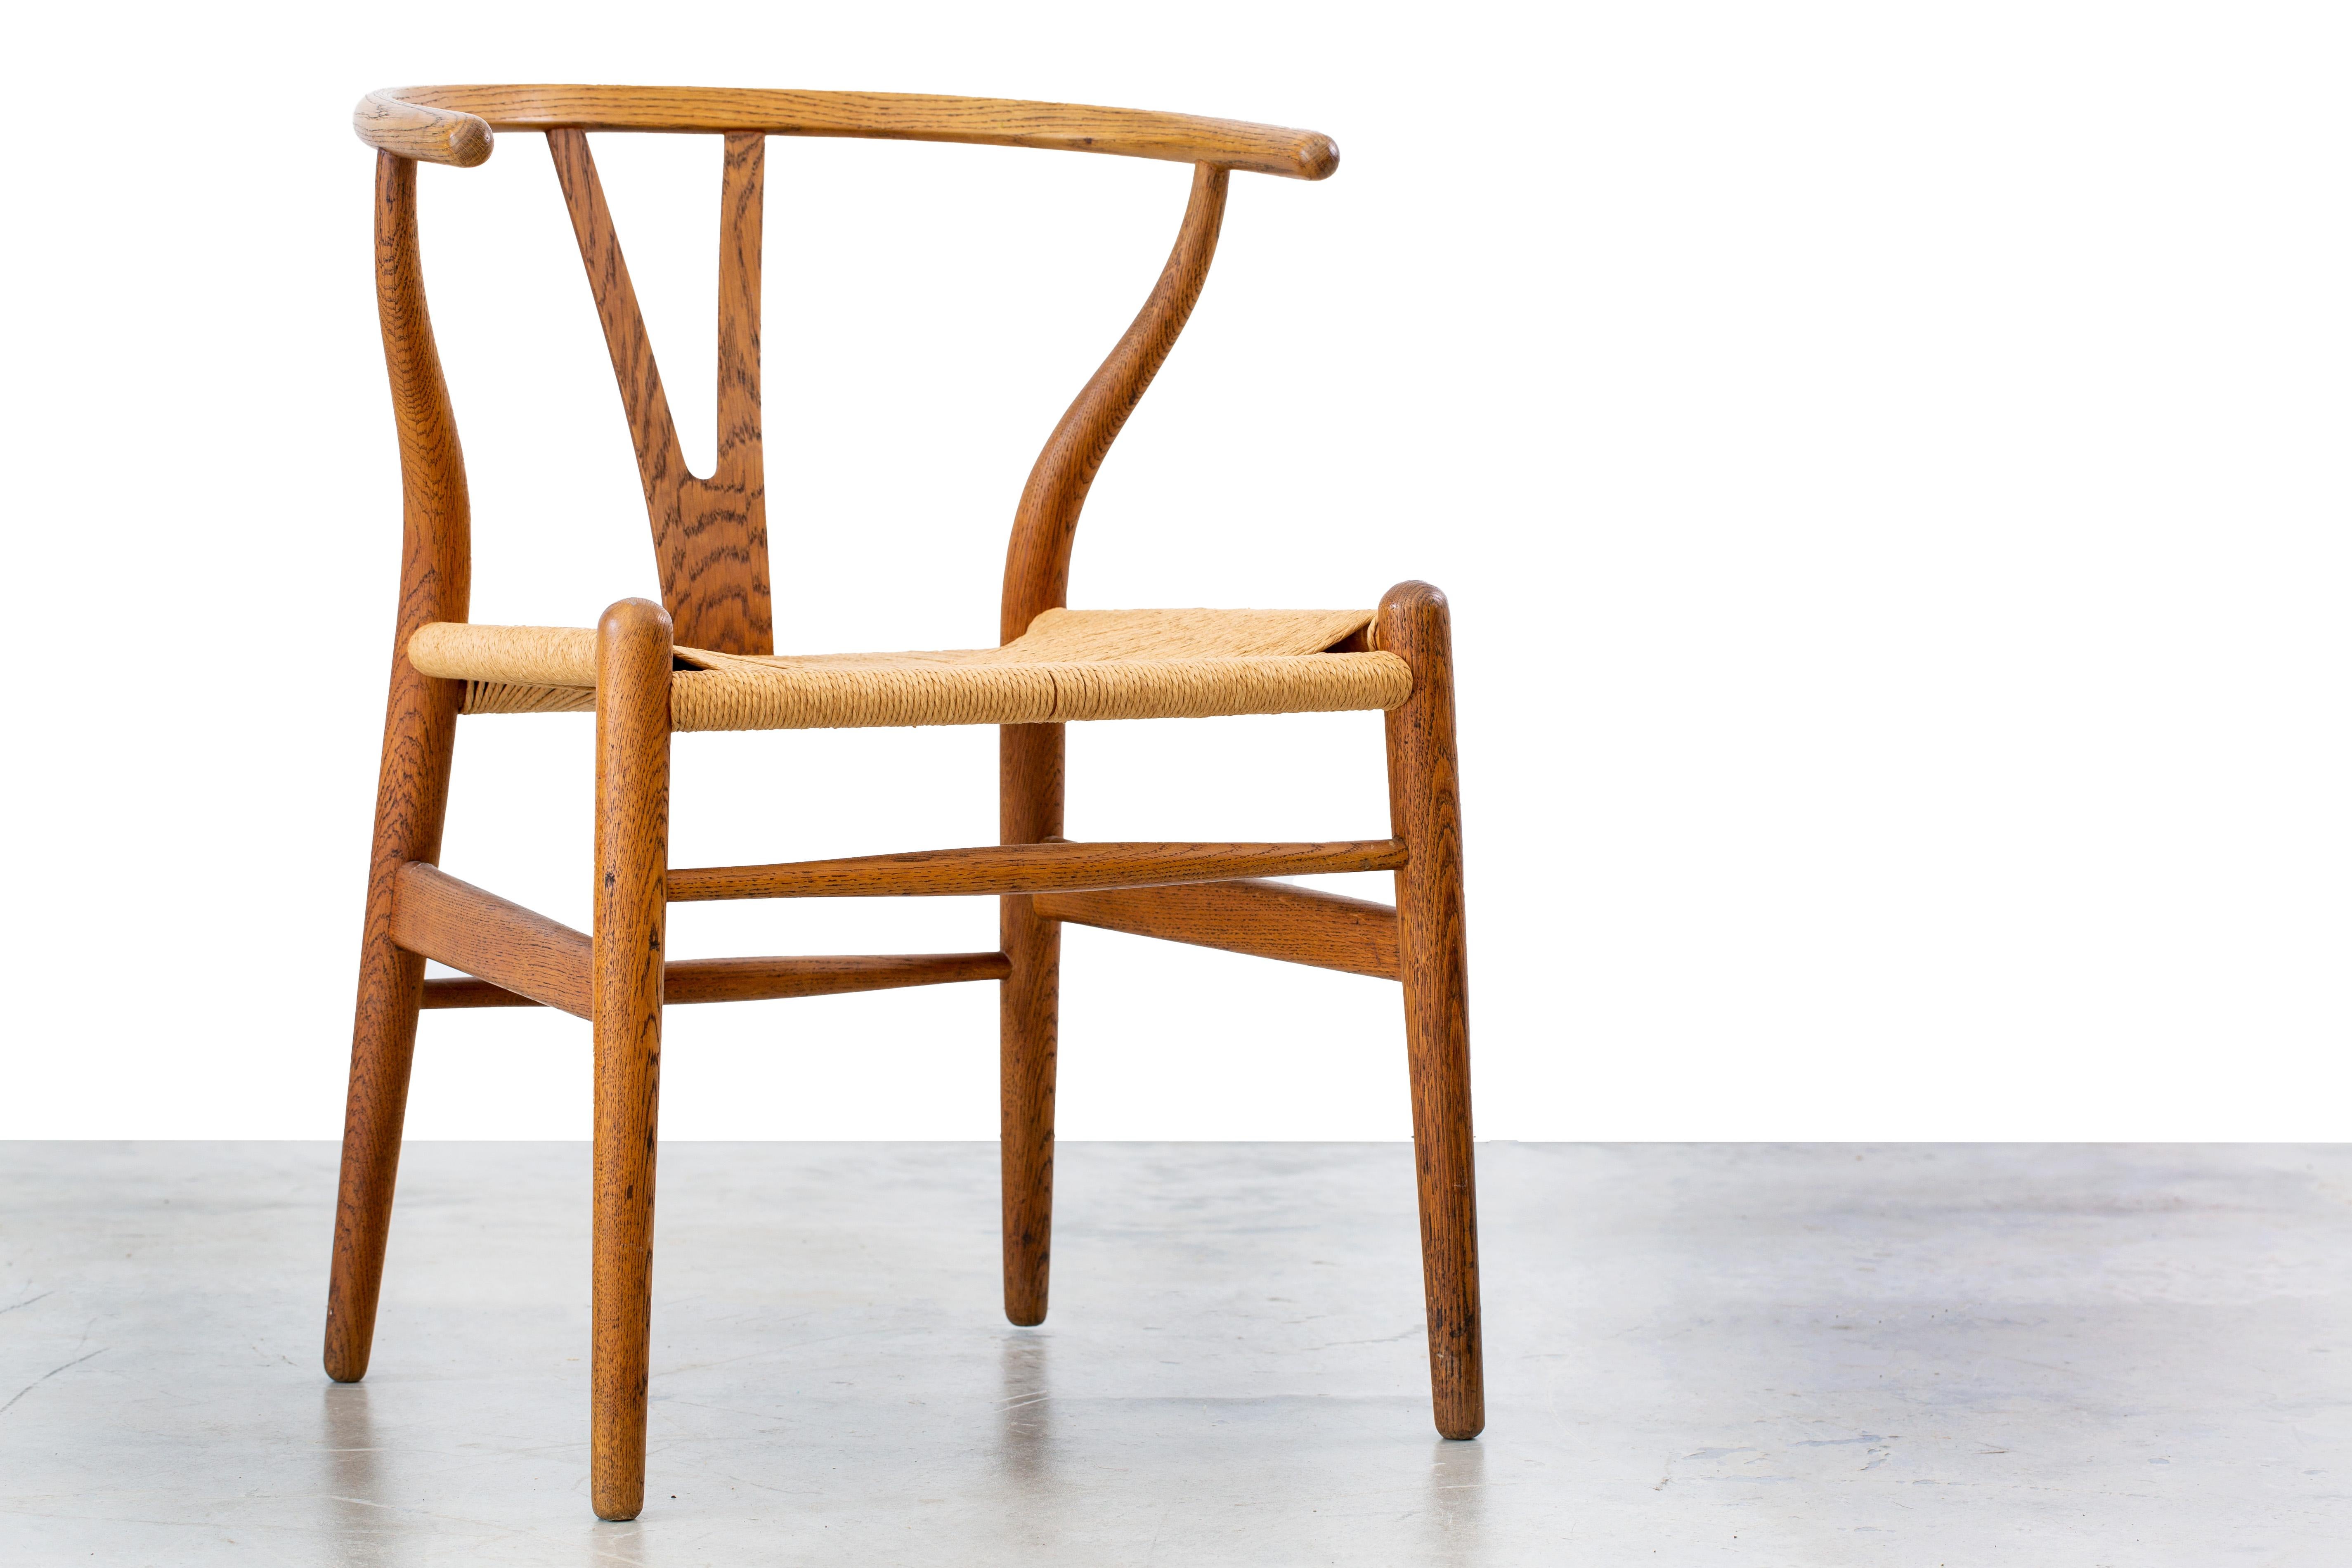 La chaise Icone à boudin, numéro de modèle CH24, conçue par Hans Wegner et importée par Illums Bolighus.  Cet exemple est une capsule temporelle, avec le chêne d'origine et le siège en cordon de papier, le tout dans un état fantastique.  Cette